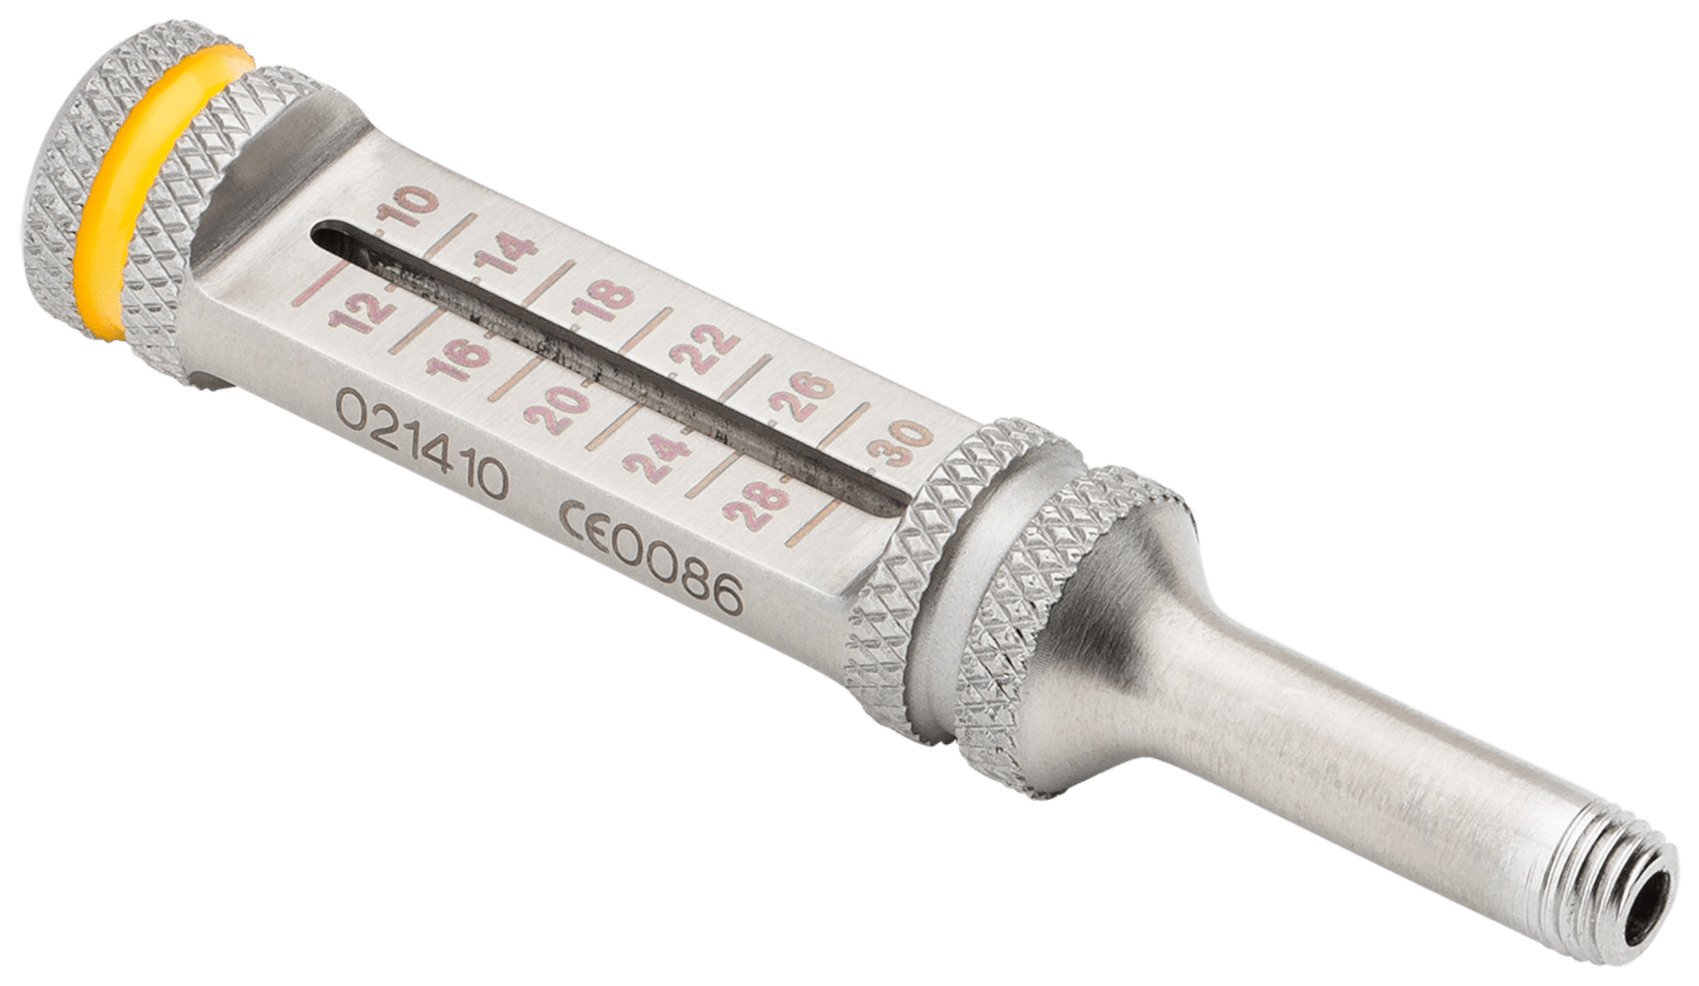 Bohrhülse / Tiefenmesser, mit Gewinde, 3.5 mm x 30 mm